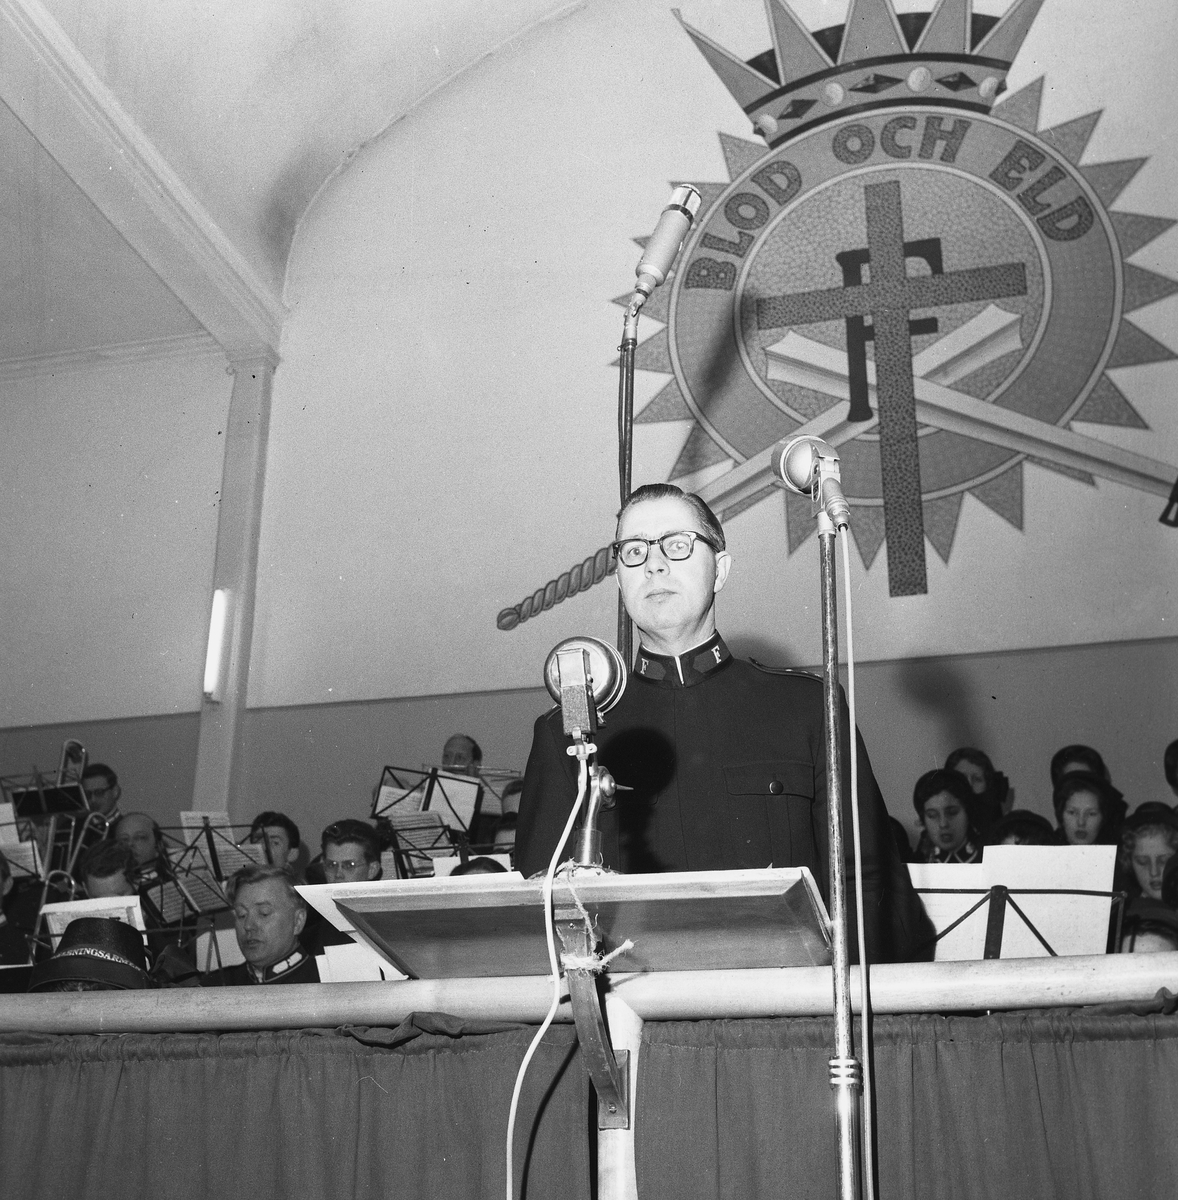 Gudstjänst från Frälsningsarmén.
30 december 1958.